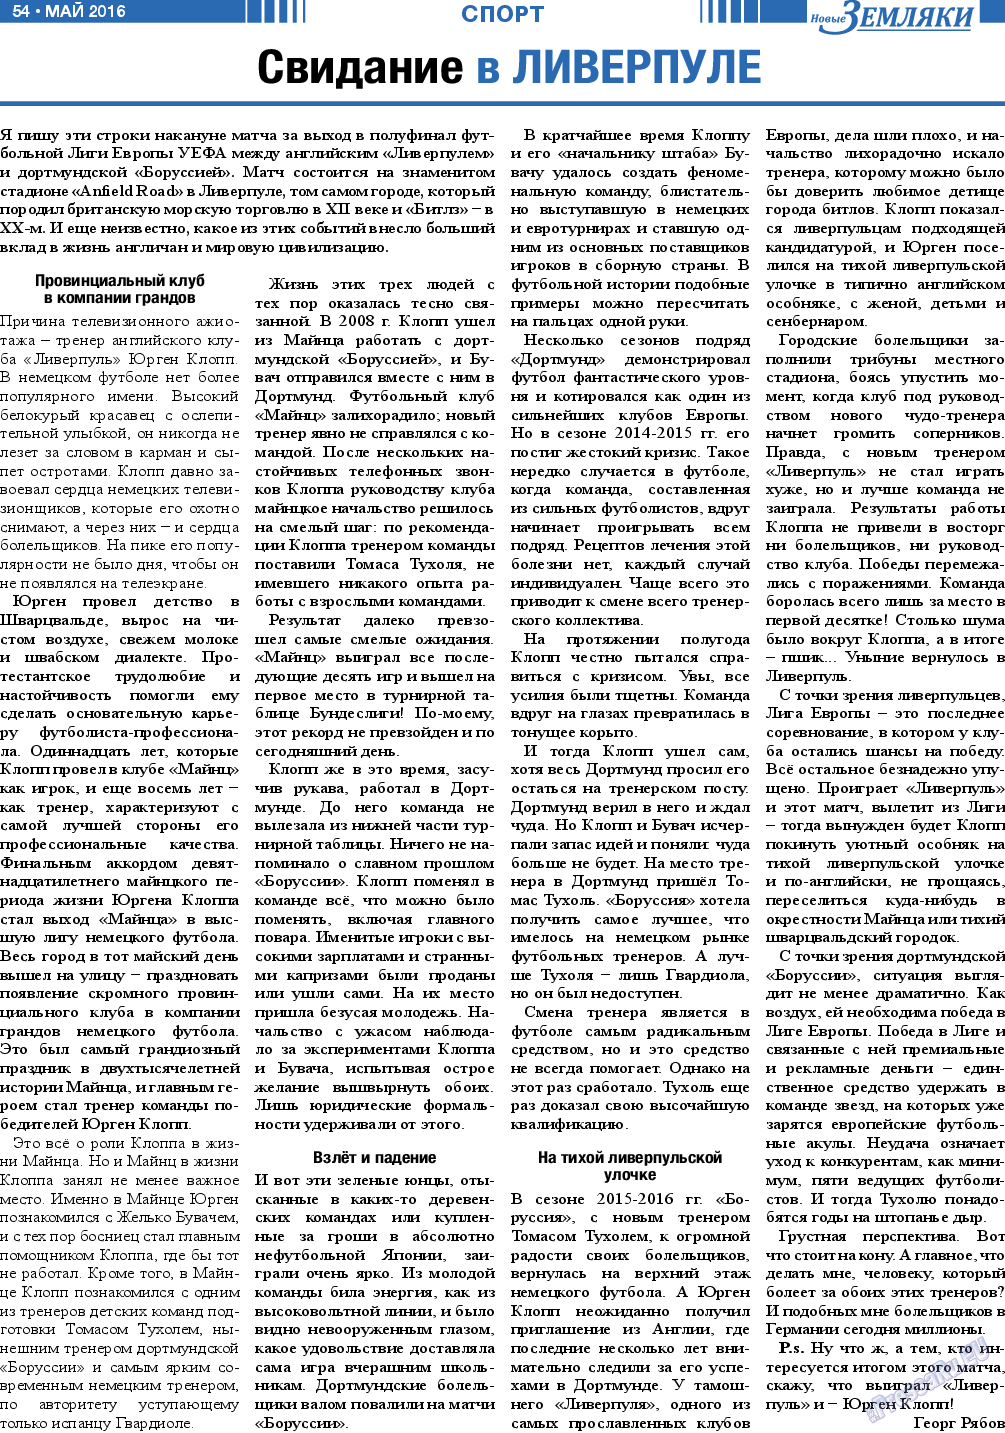 Новые Земляки, газета. 2016 №5 стр.54